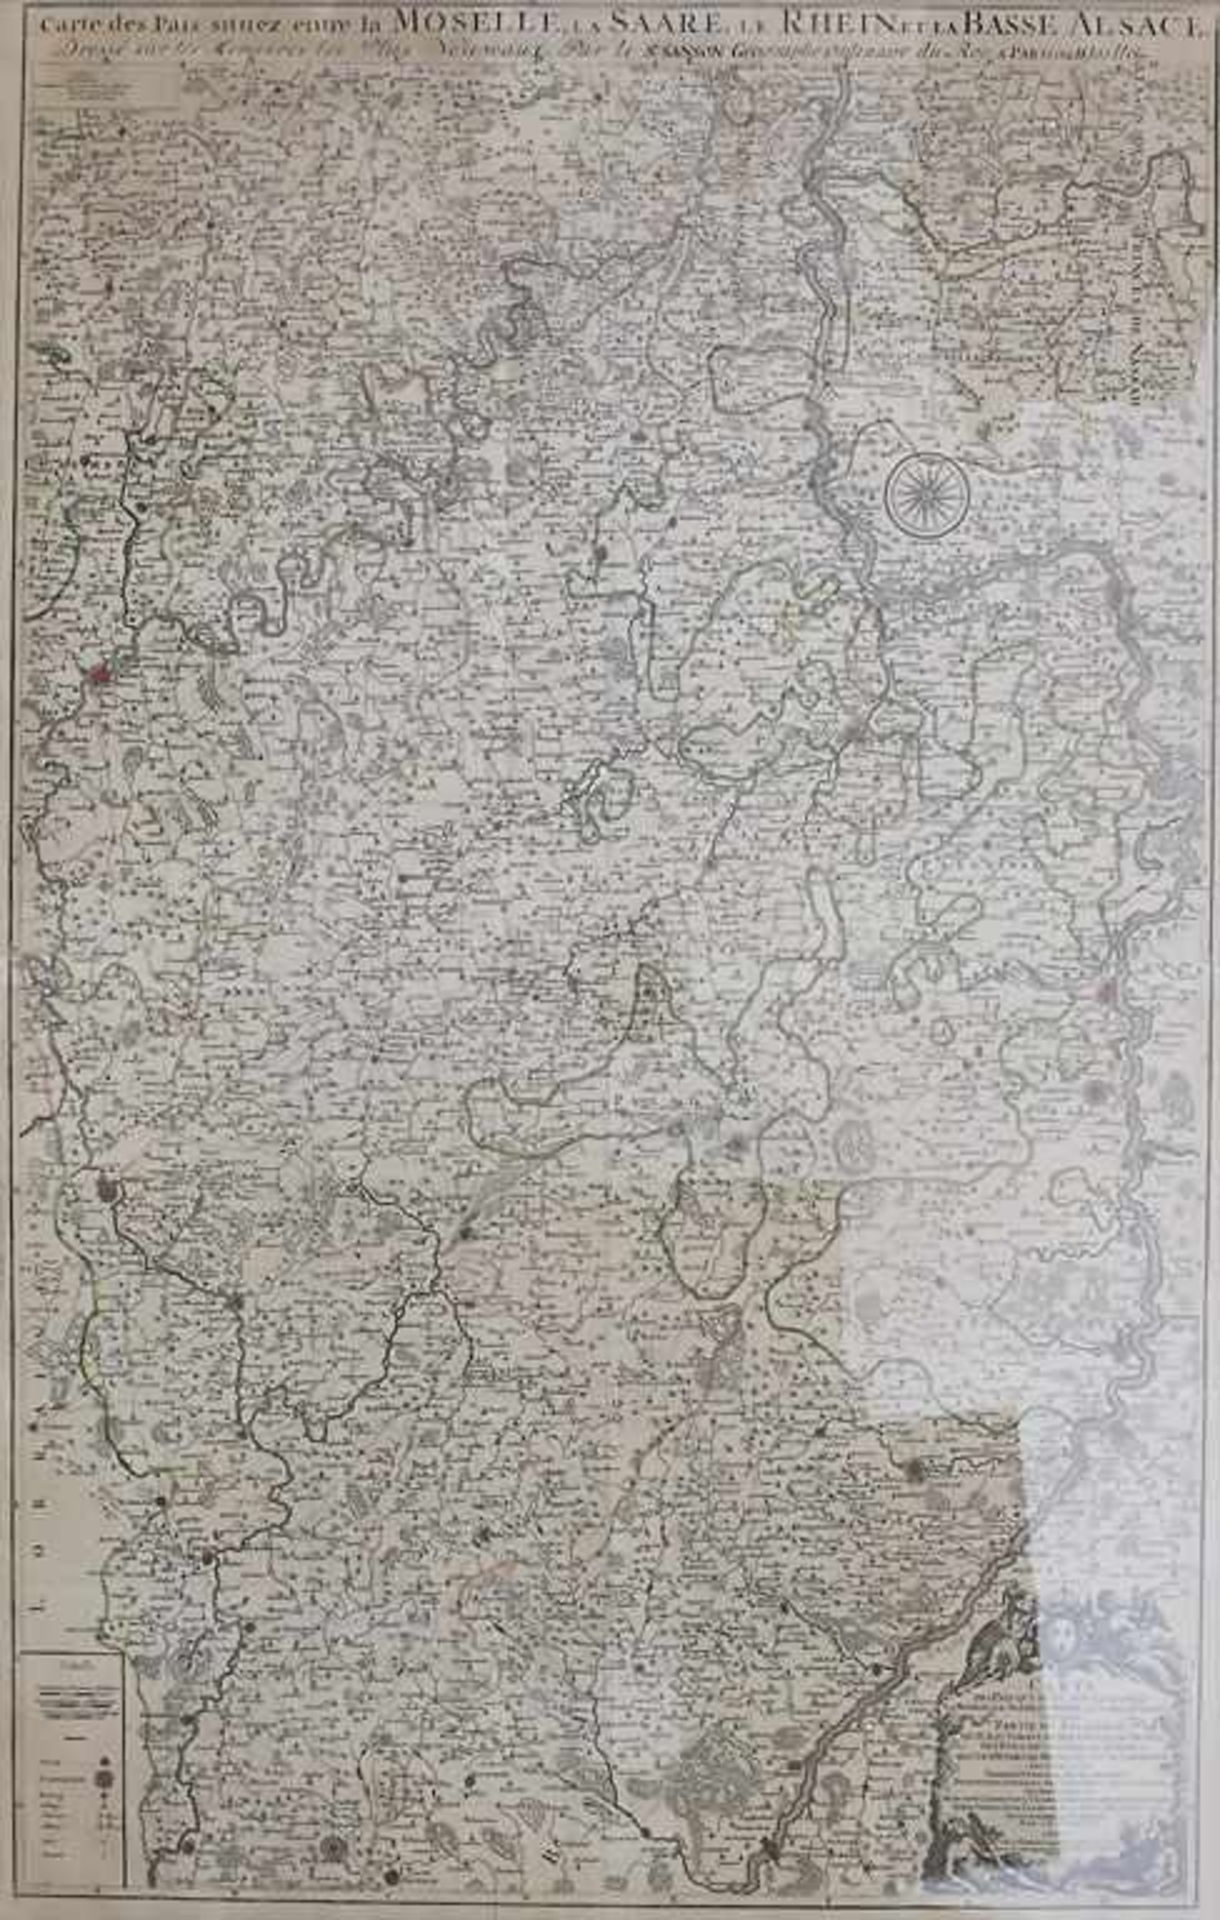 Nicolas Sanson d'Abbeville (1600-1667), große historische Karte von Saarland, Pfalz und